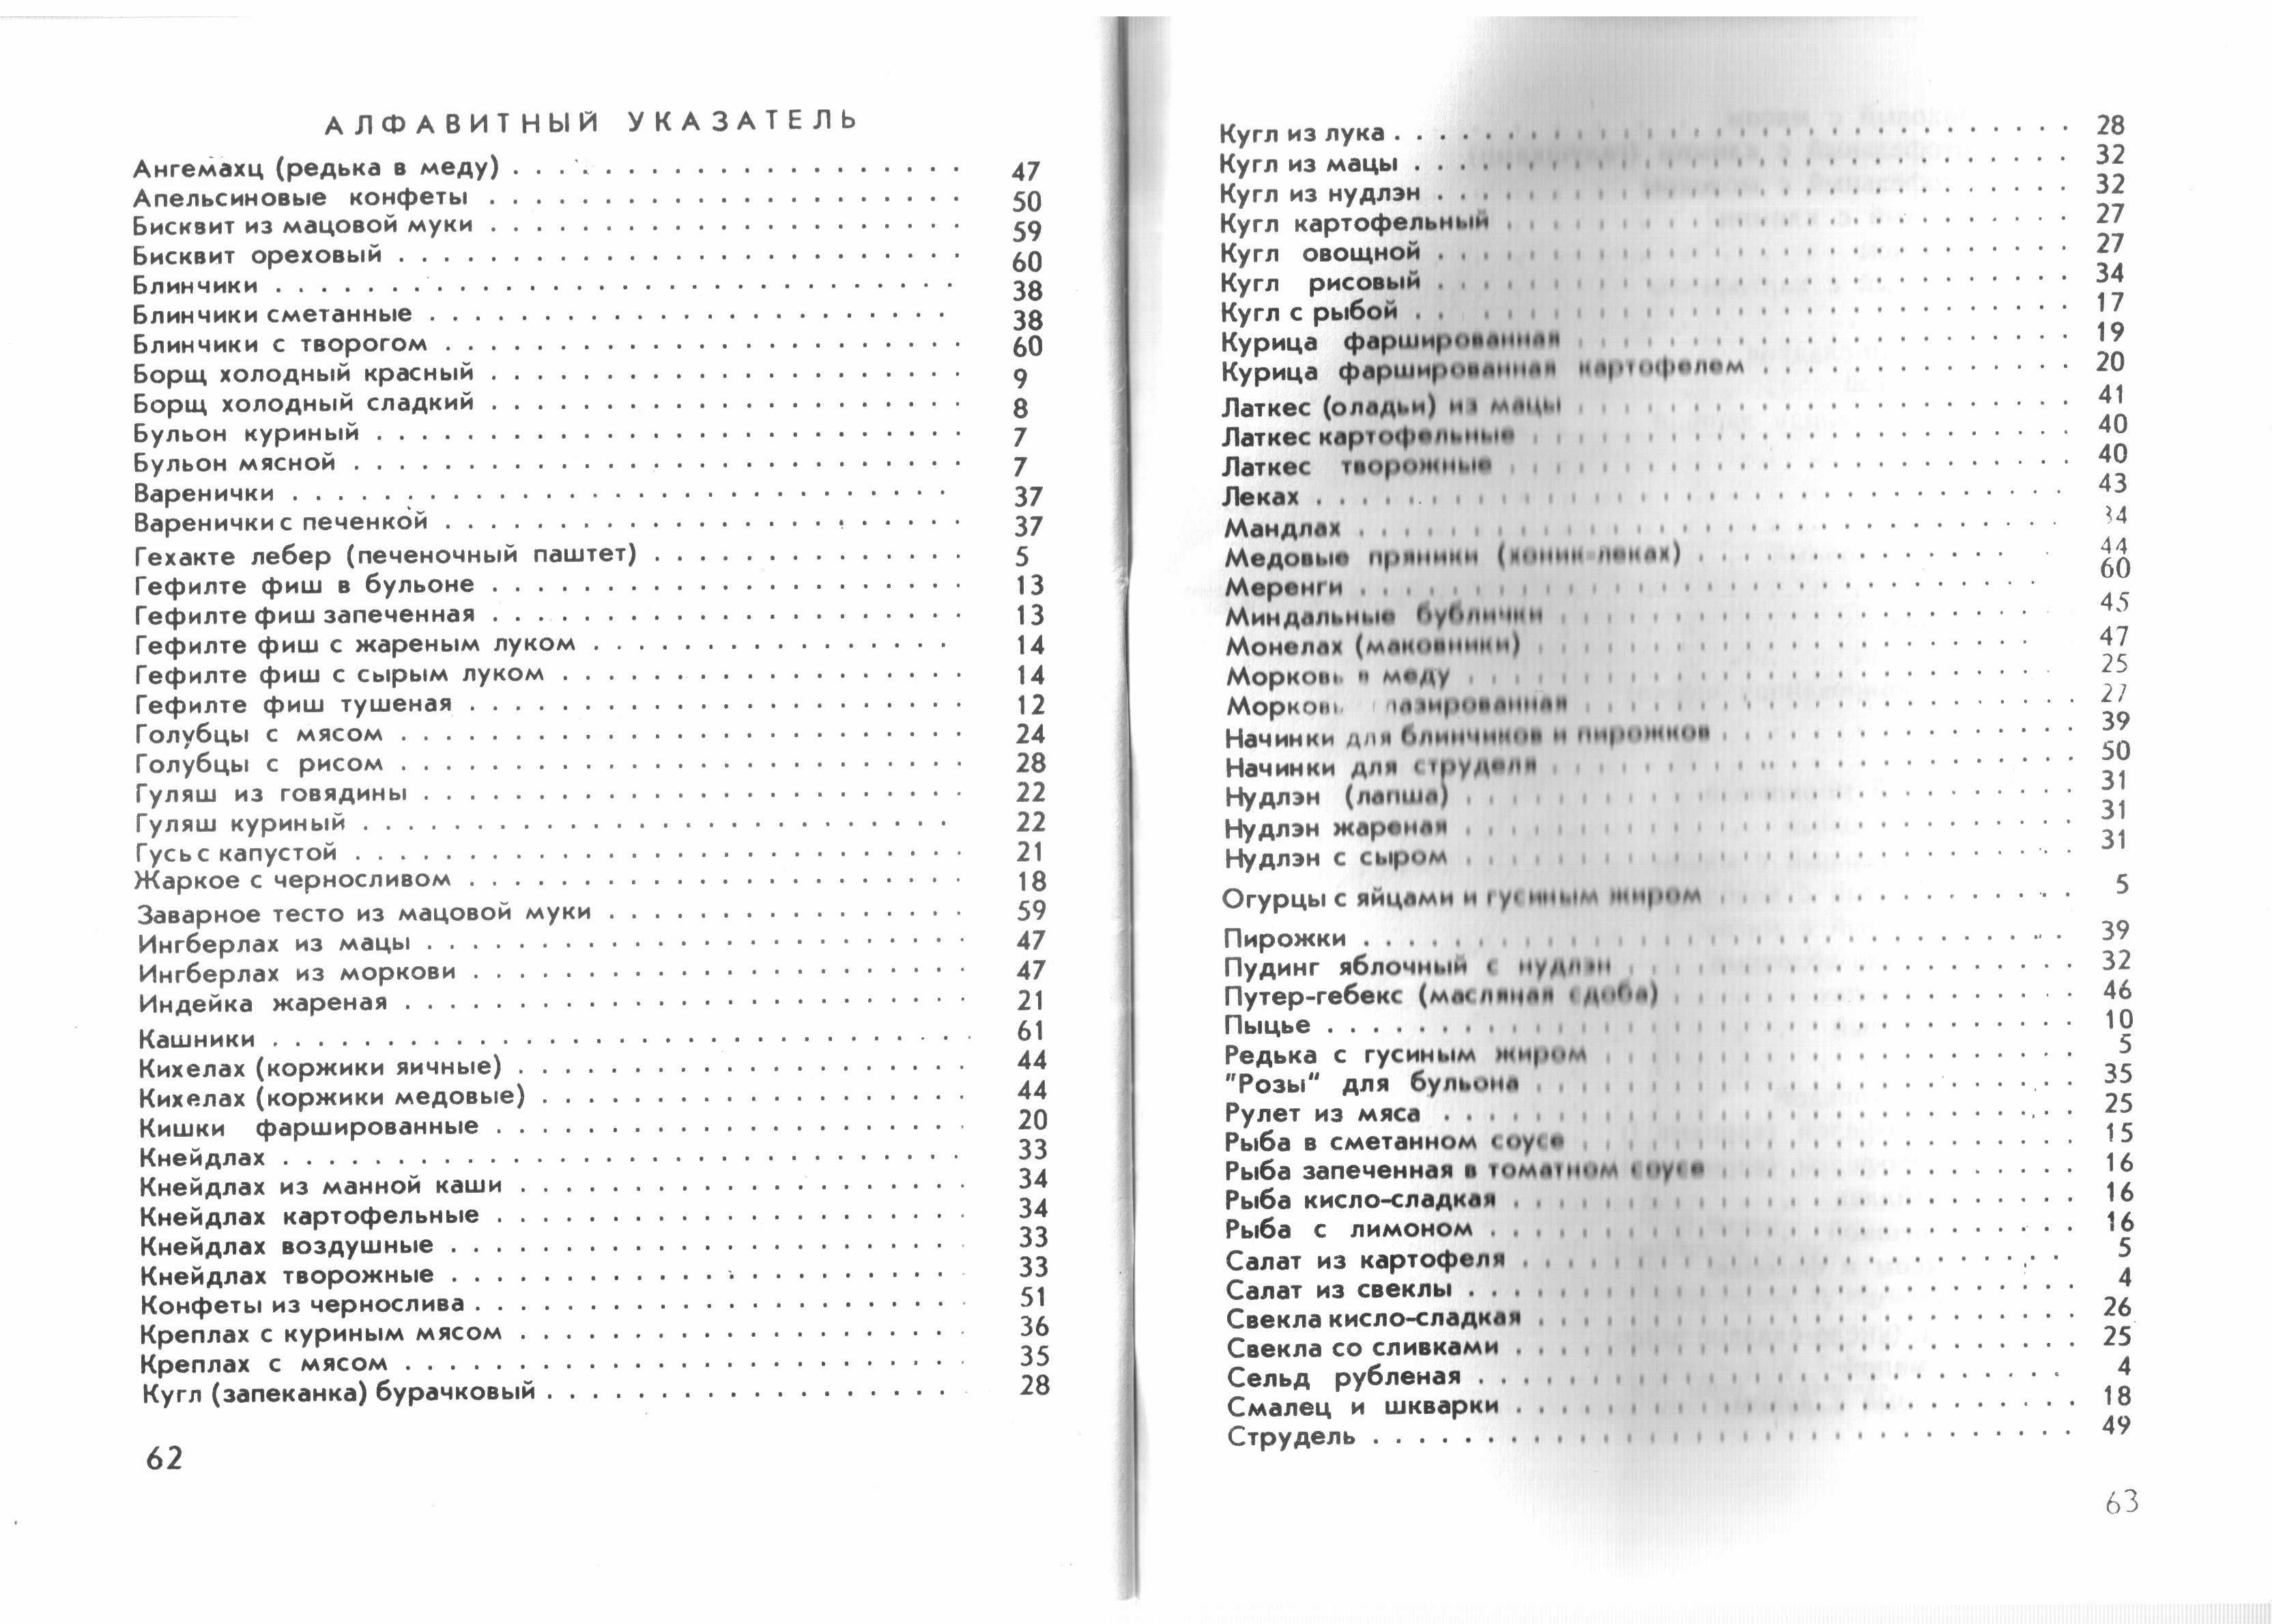 120 блюд еврейской кухни. Кишинёв, 1991